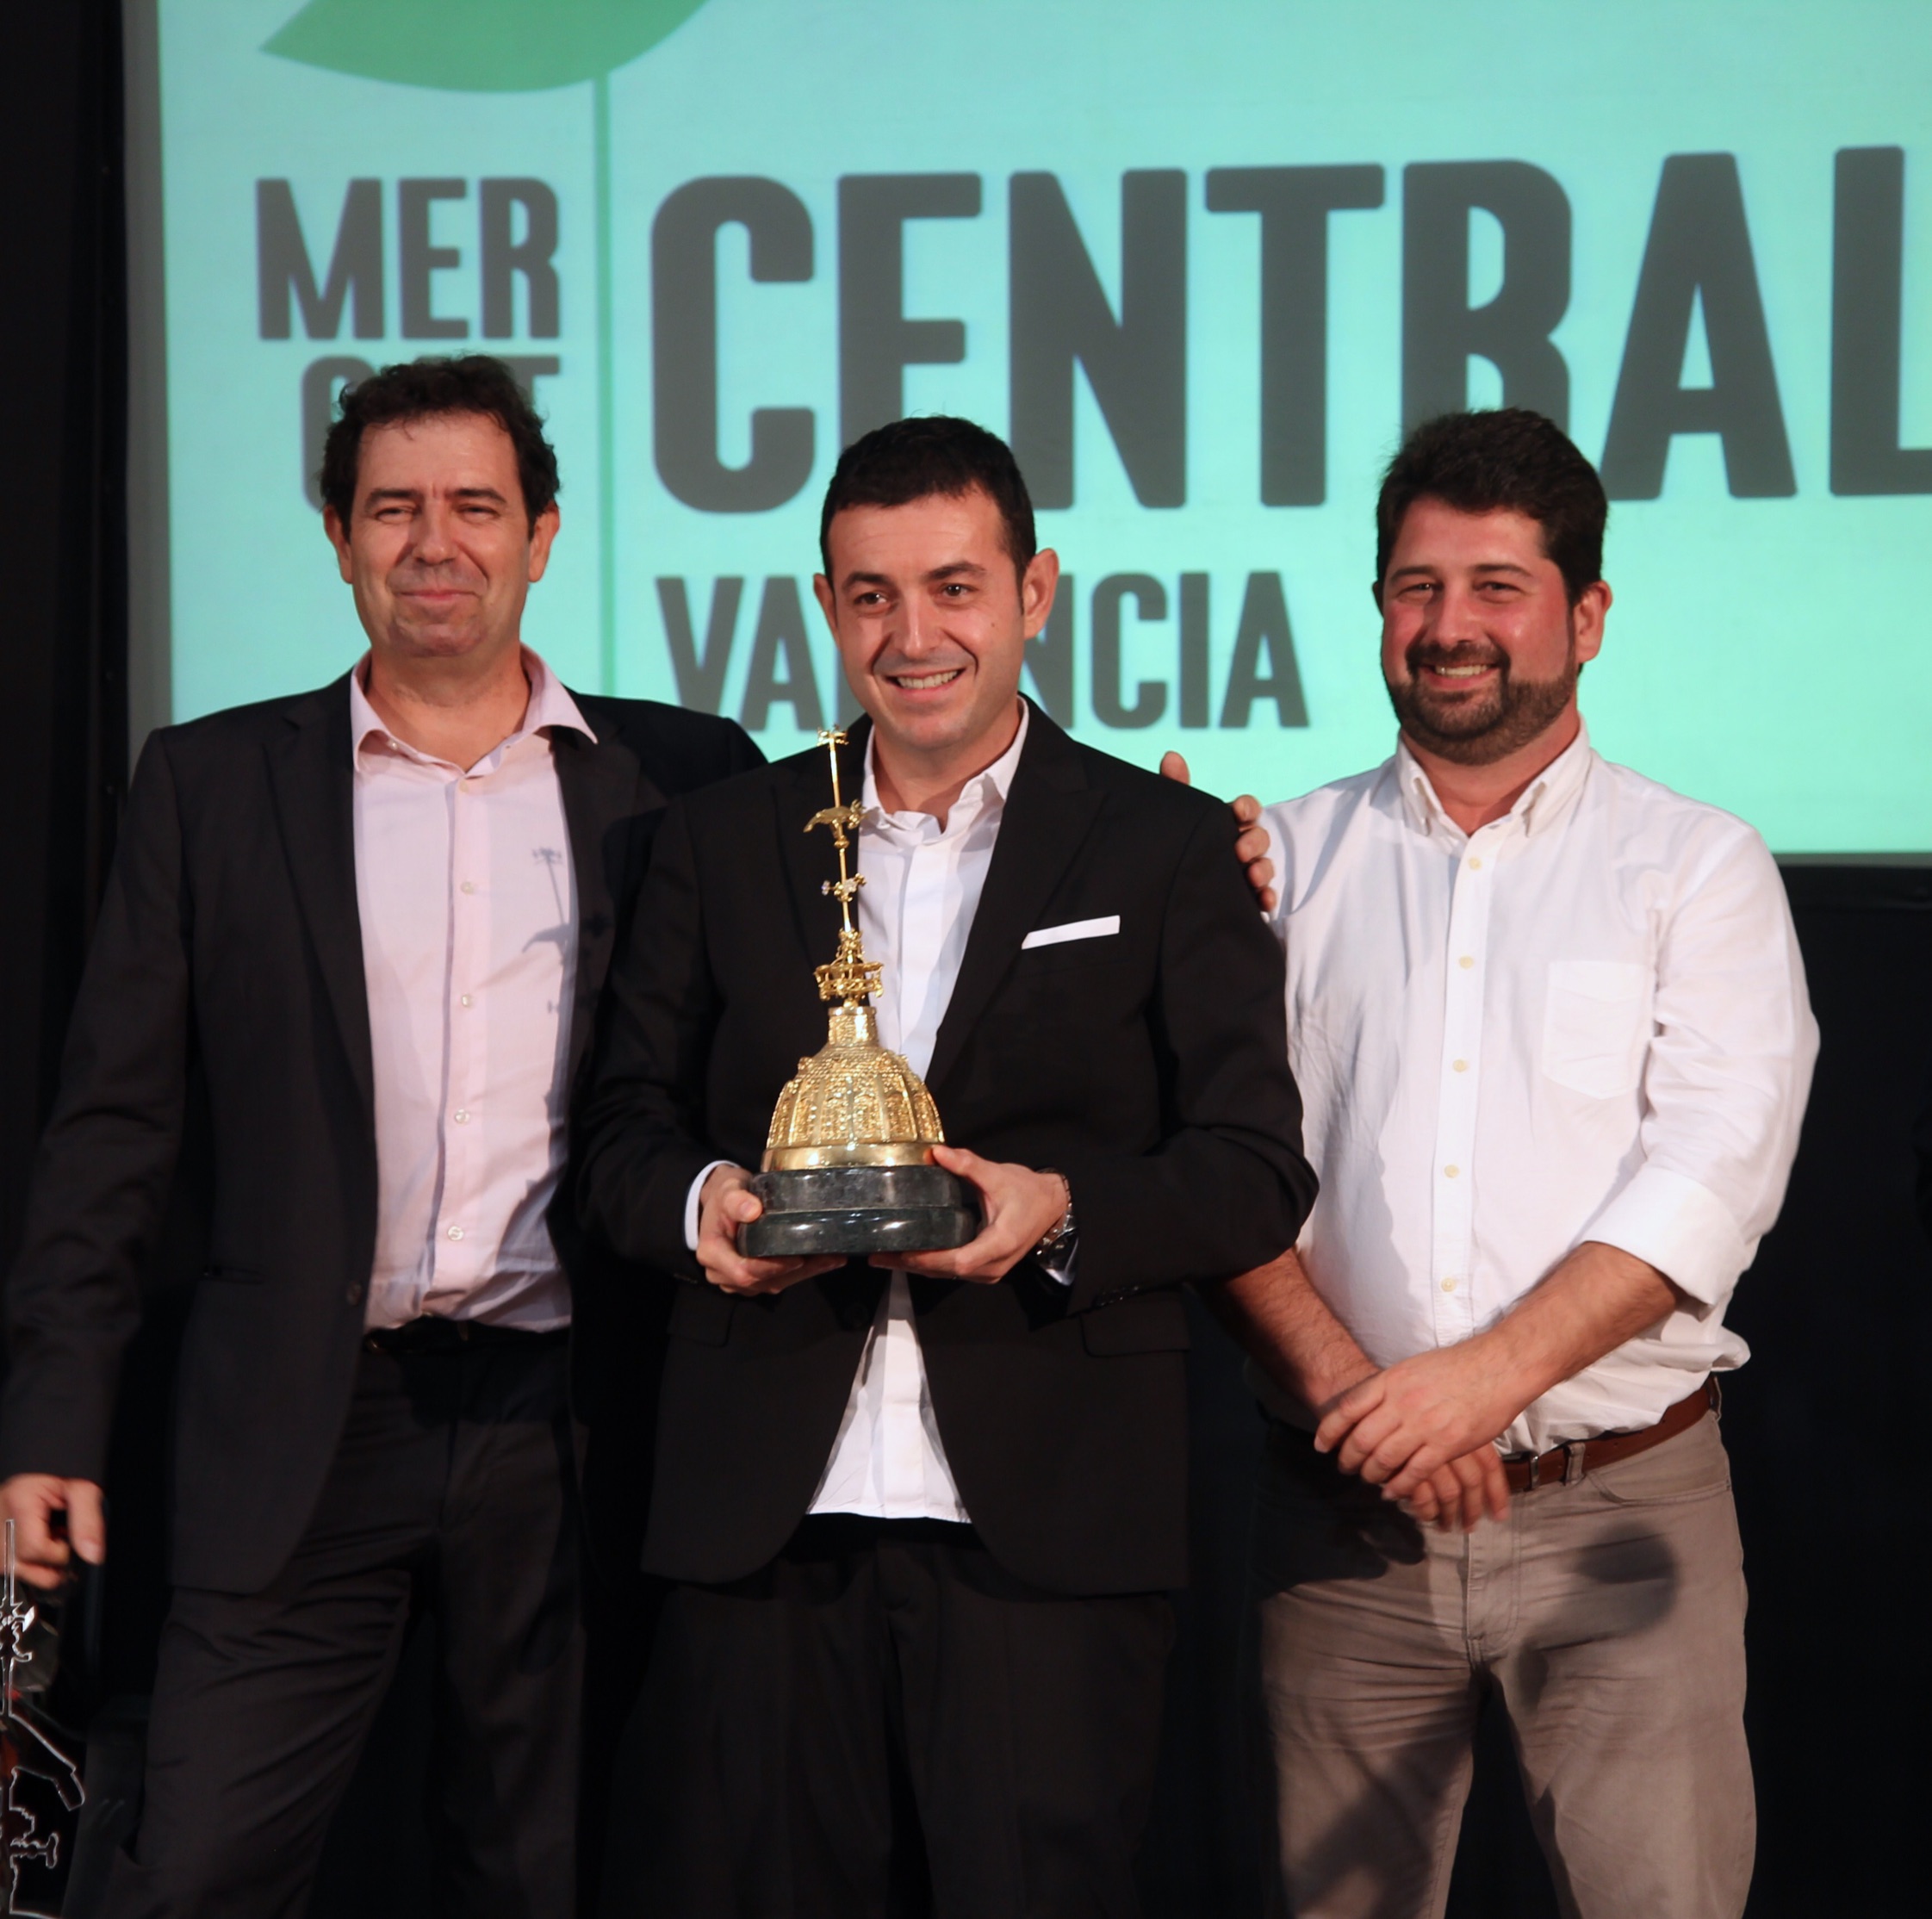 Ricard Camarena recibe el Premio Cotorra 2016 de Gastronomía que otorga el Mercado Central de Valencia